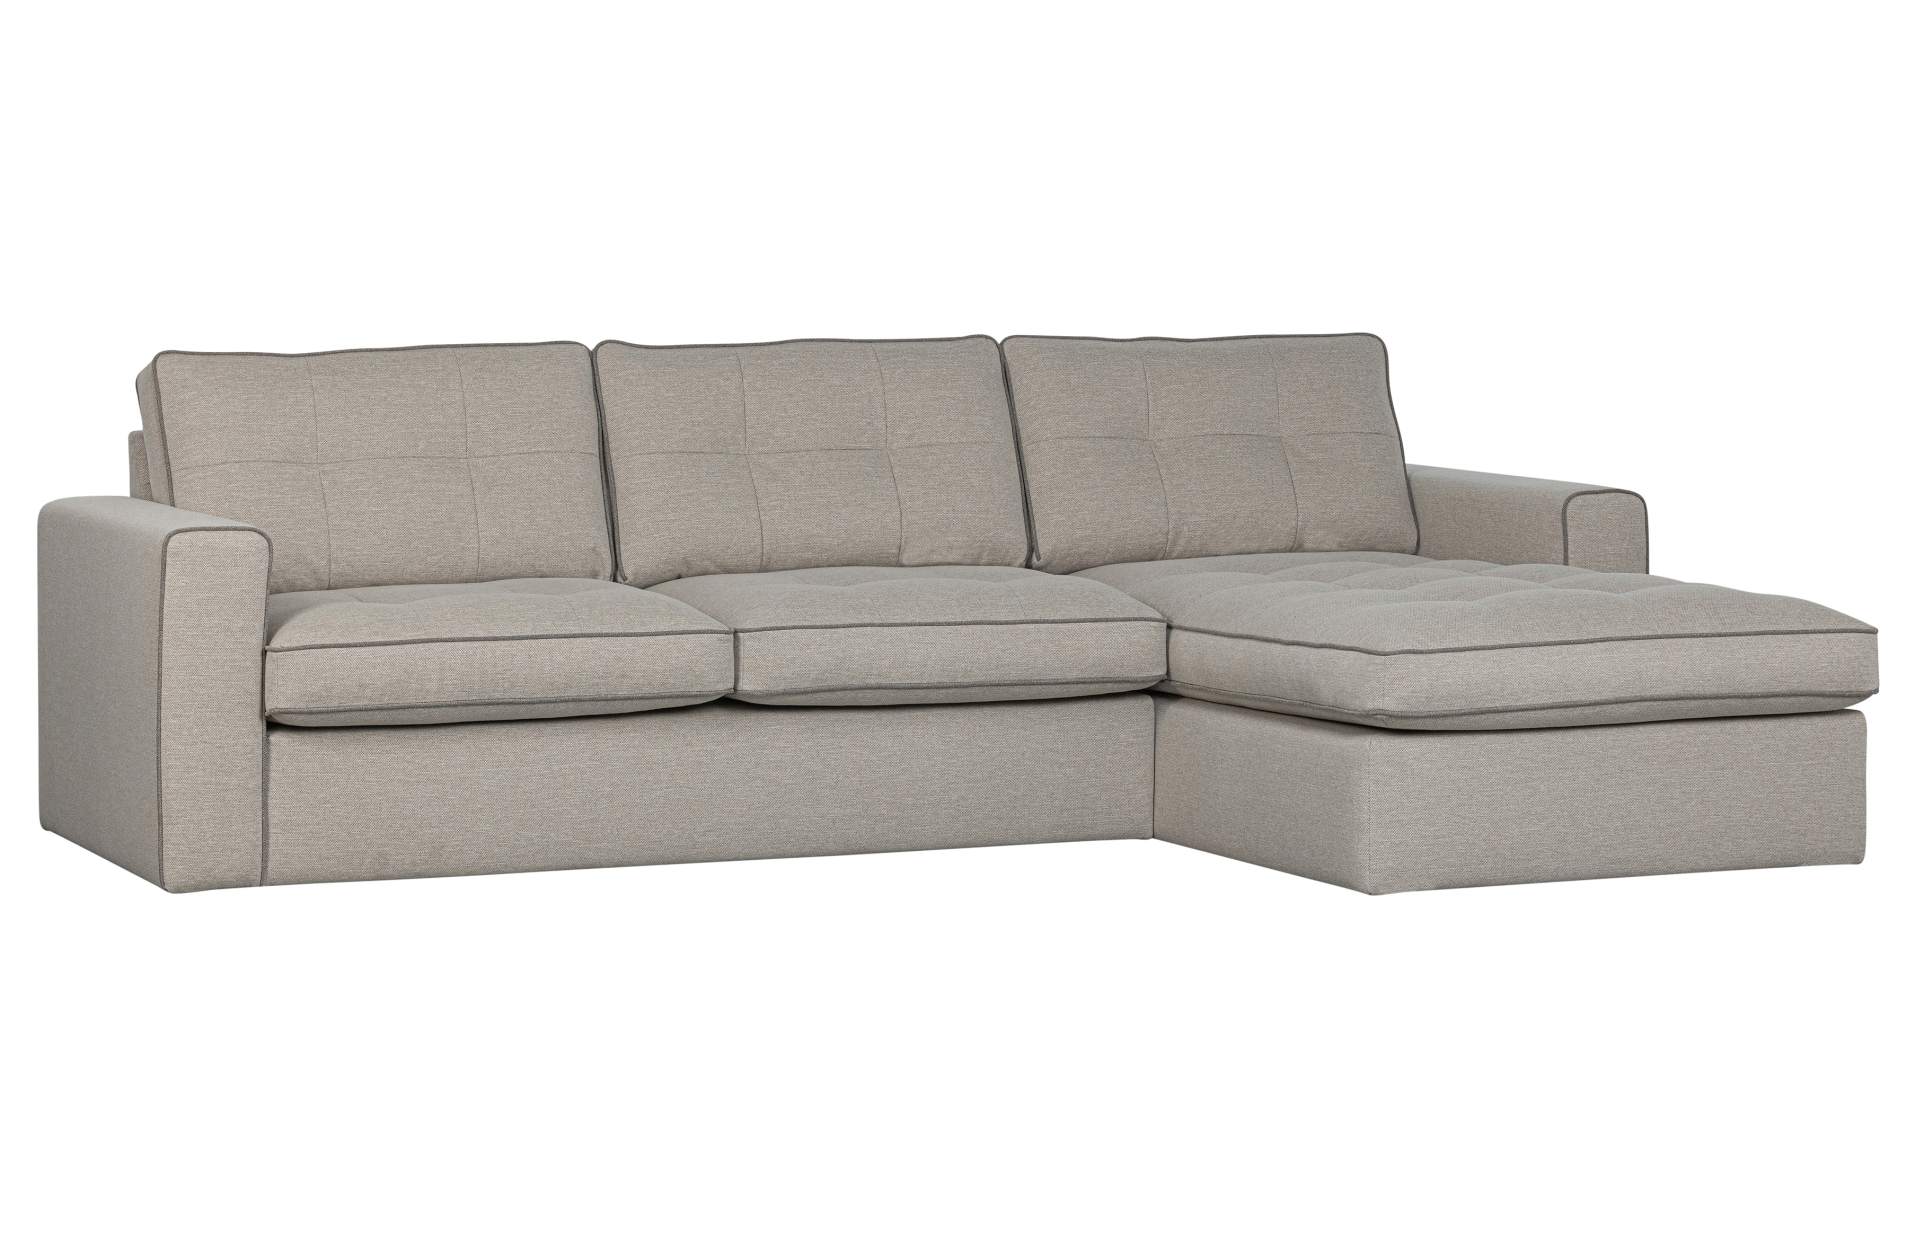 Das Ecksofa Lisa überzeugt mit seinem klassischen Design. Gefertigt wurde es aus Kunststofffasern, welche einen einen grauen Farbton besitzen. Die Ausführung des Sofas ist Rechts. Die Sitzhöhe beträgt 51 cm.